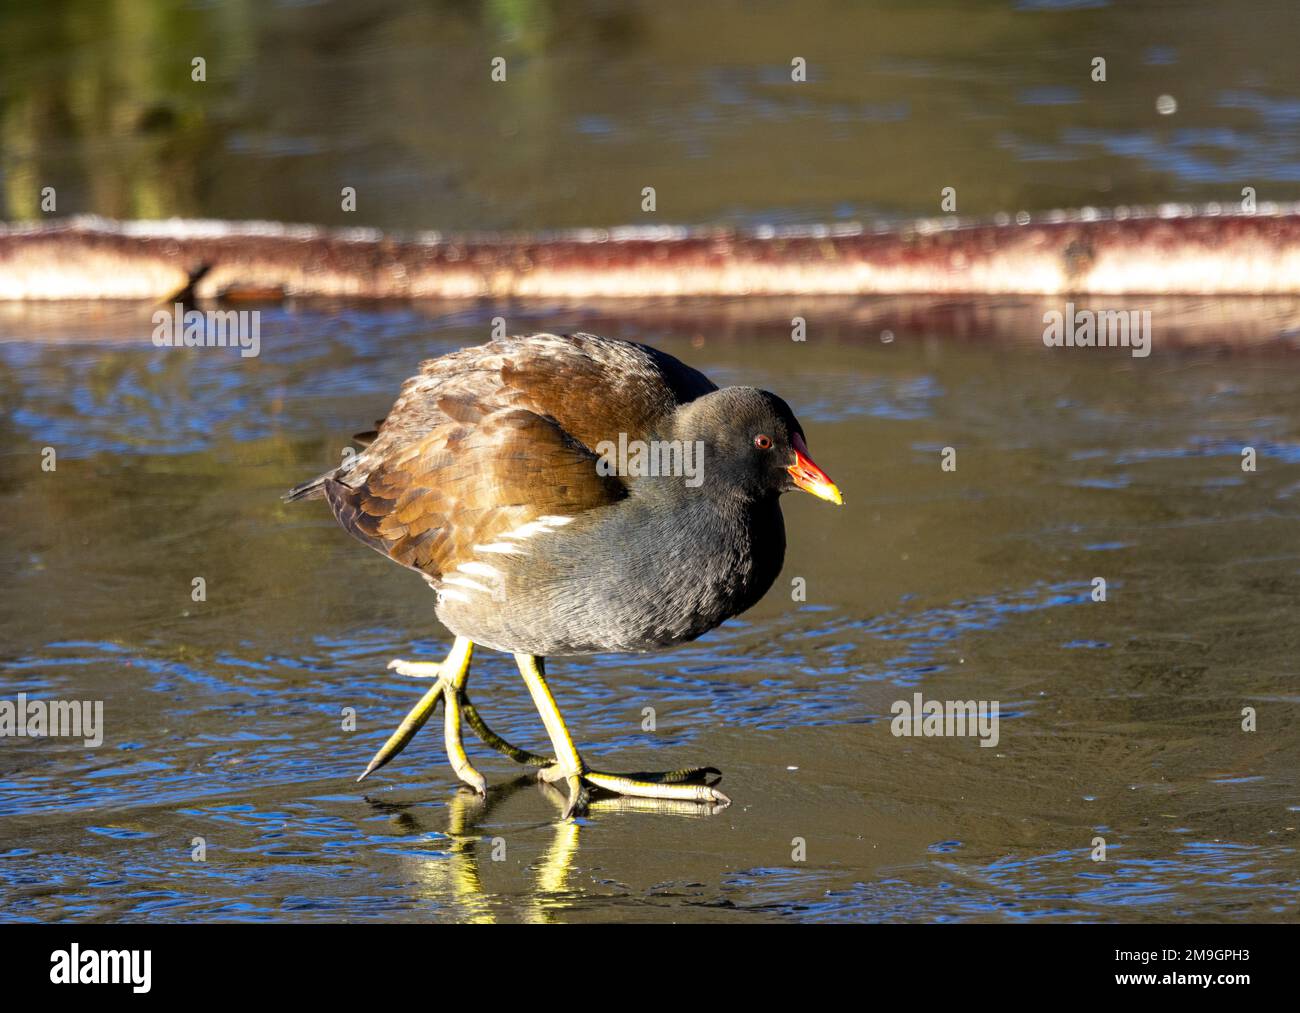 El Moorhen es un ave acuática común de las vías navegables interiores alrededor del Reino Unido. Son residentes durante todo el año y son capaces de manejar todas las condiciones climáticas Foto de stock